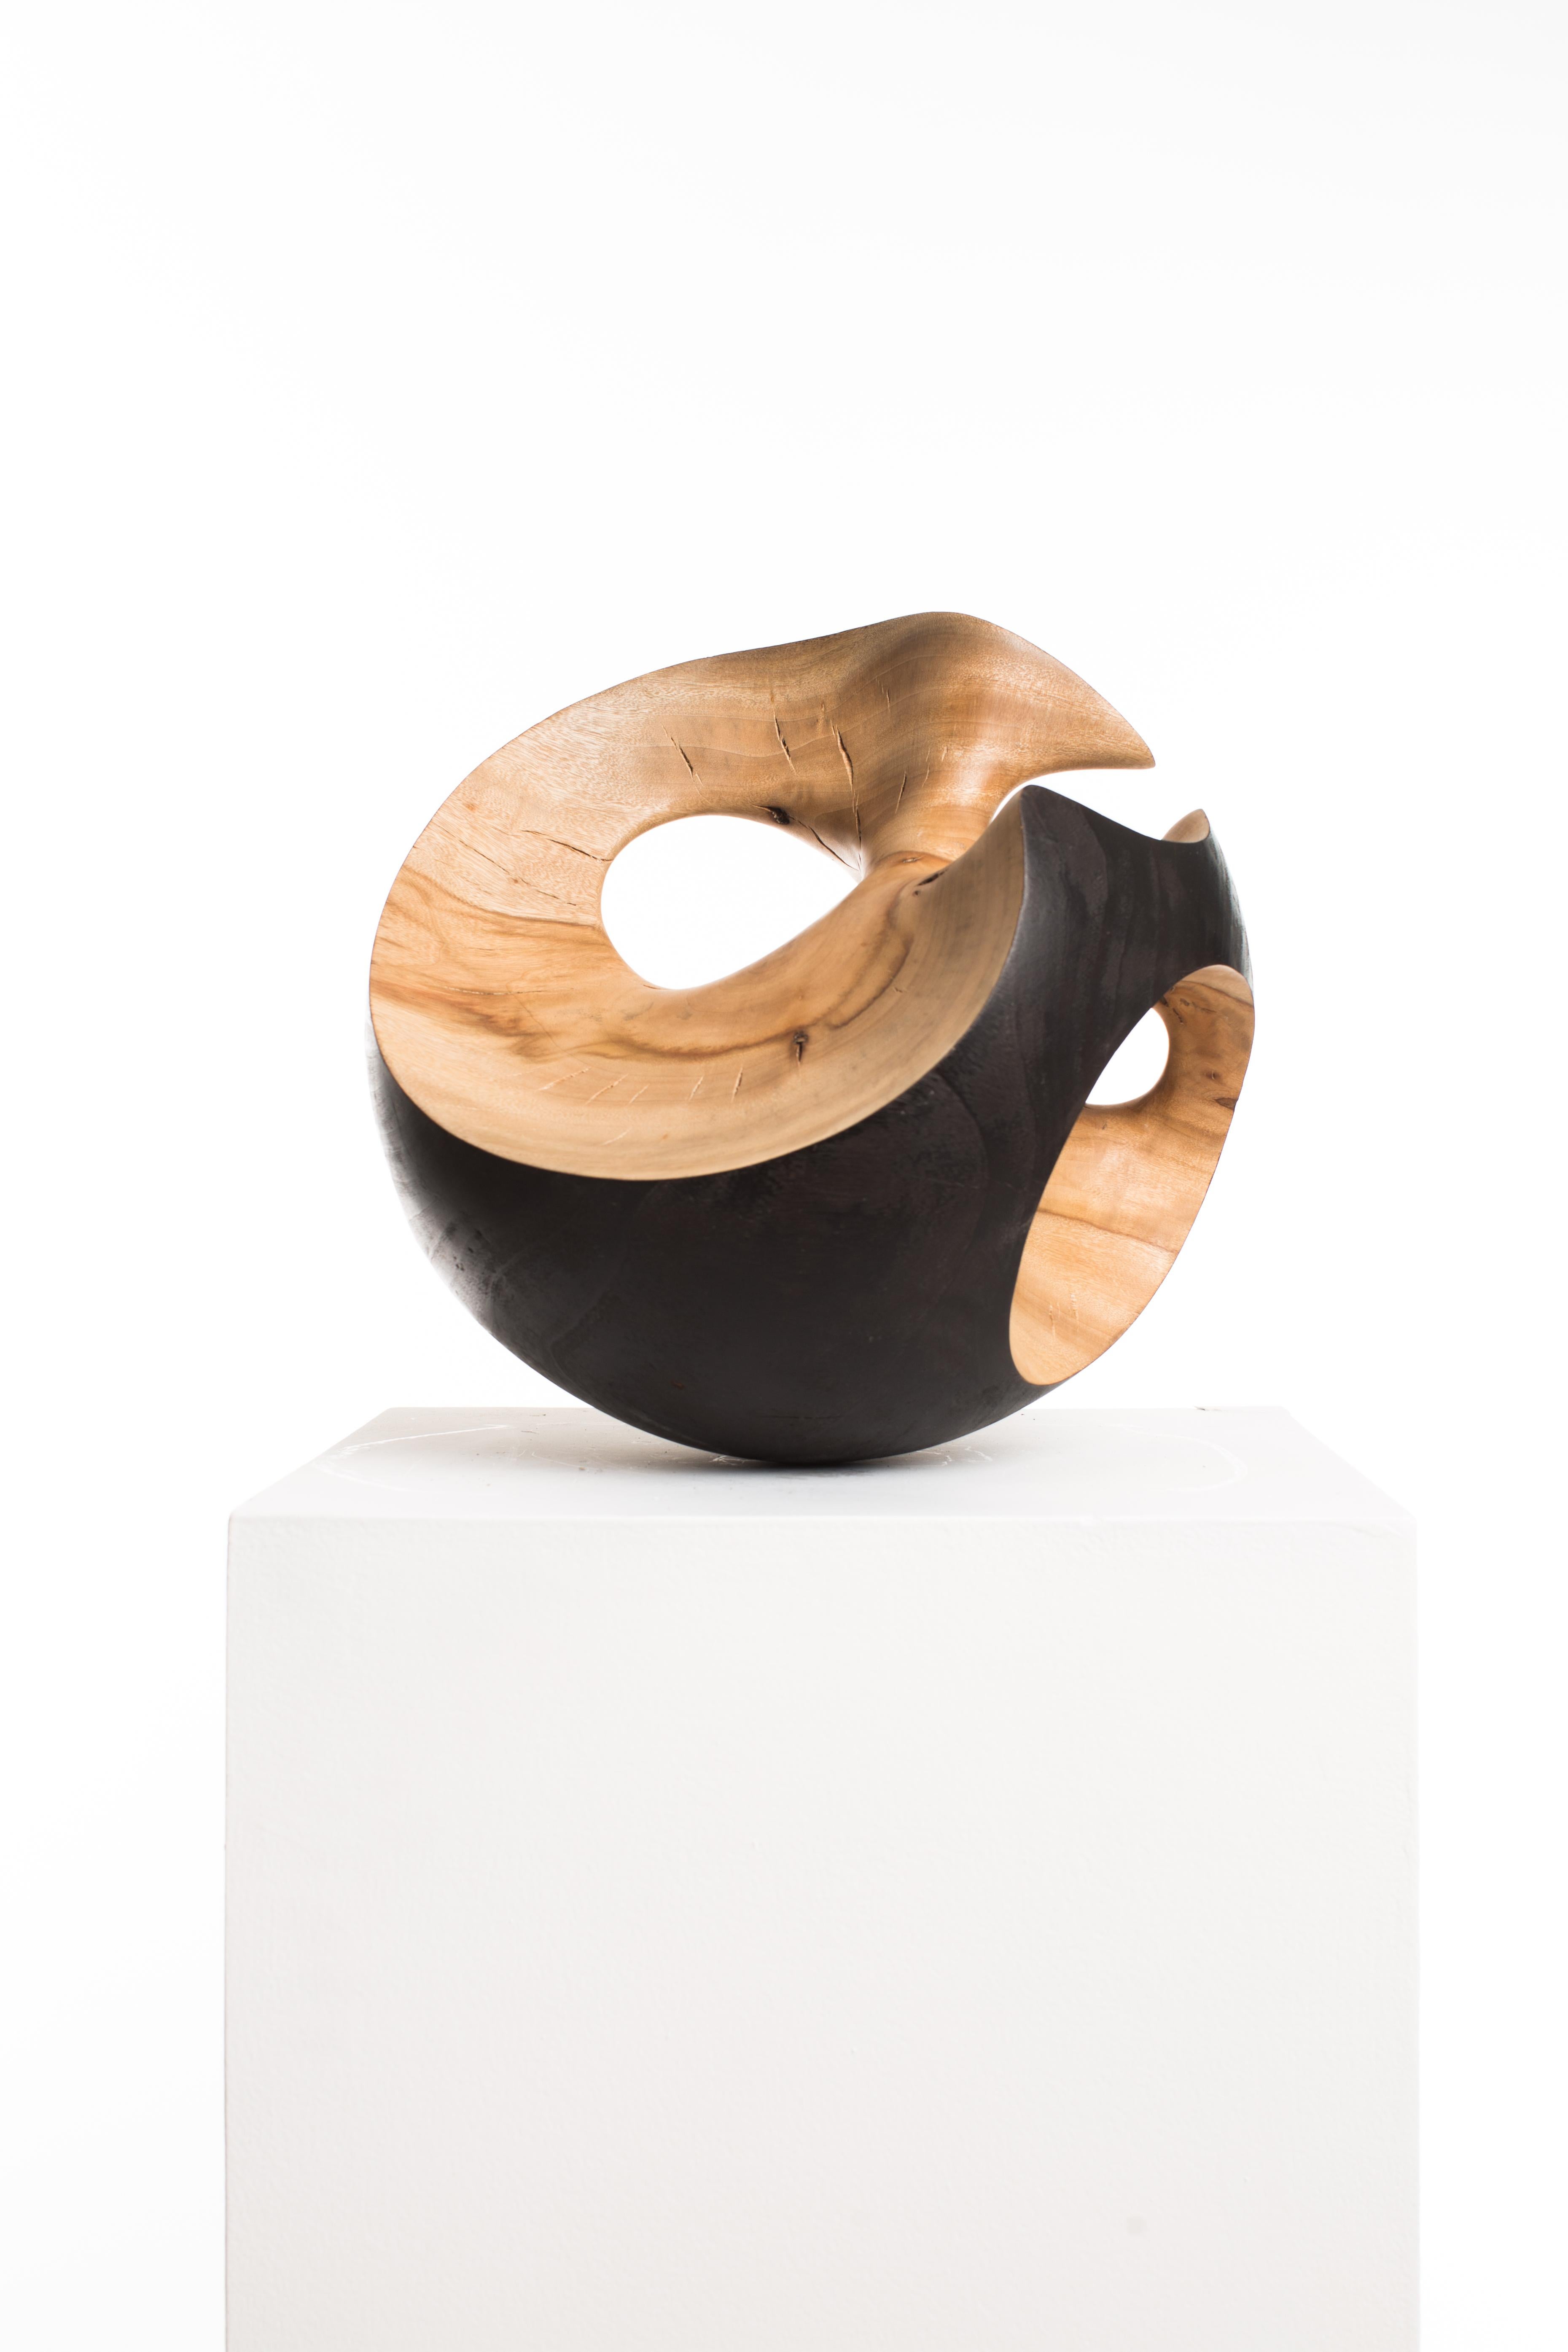 Driaan Claassen Abstract Sculpture - Raw, Black, Wood, Matte, Abstract, Contemporary, Modern, Sculpture